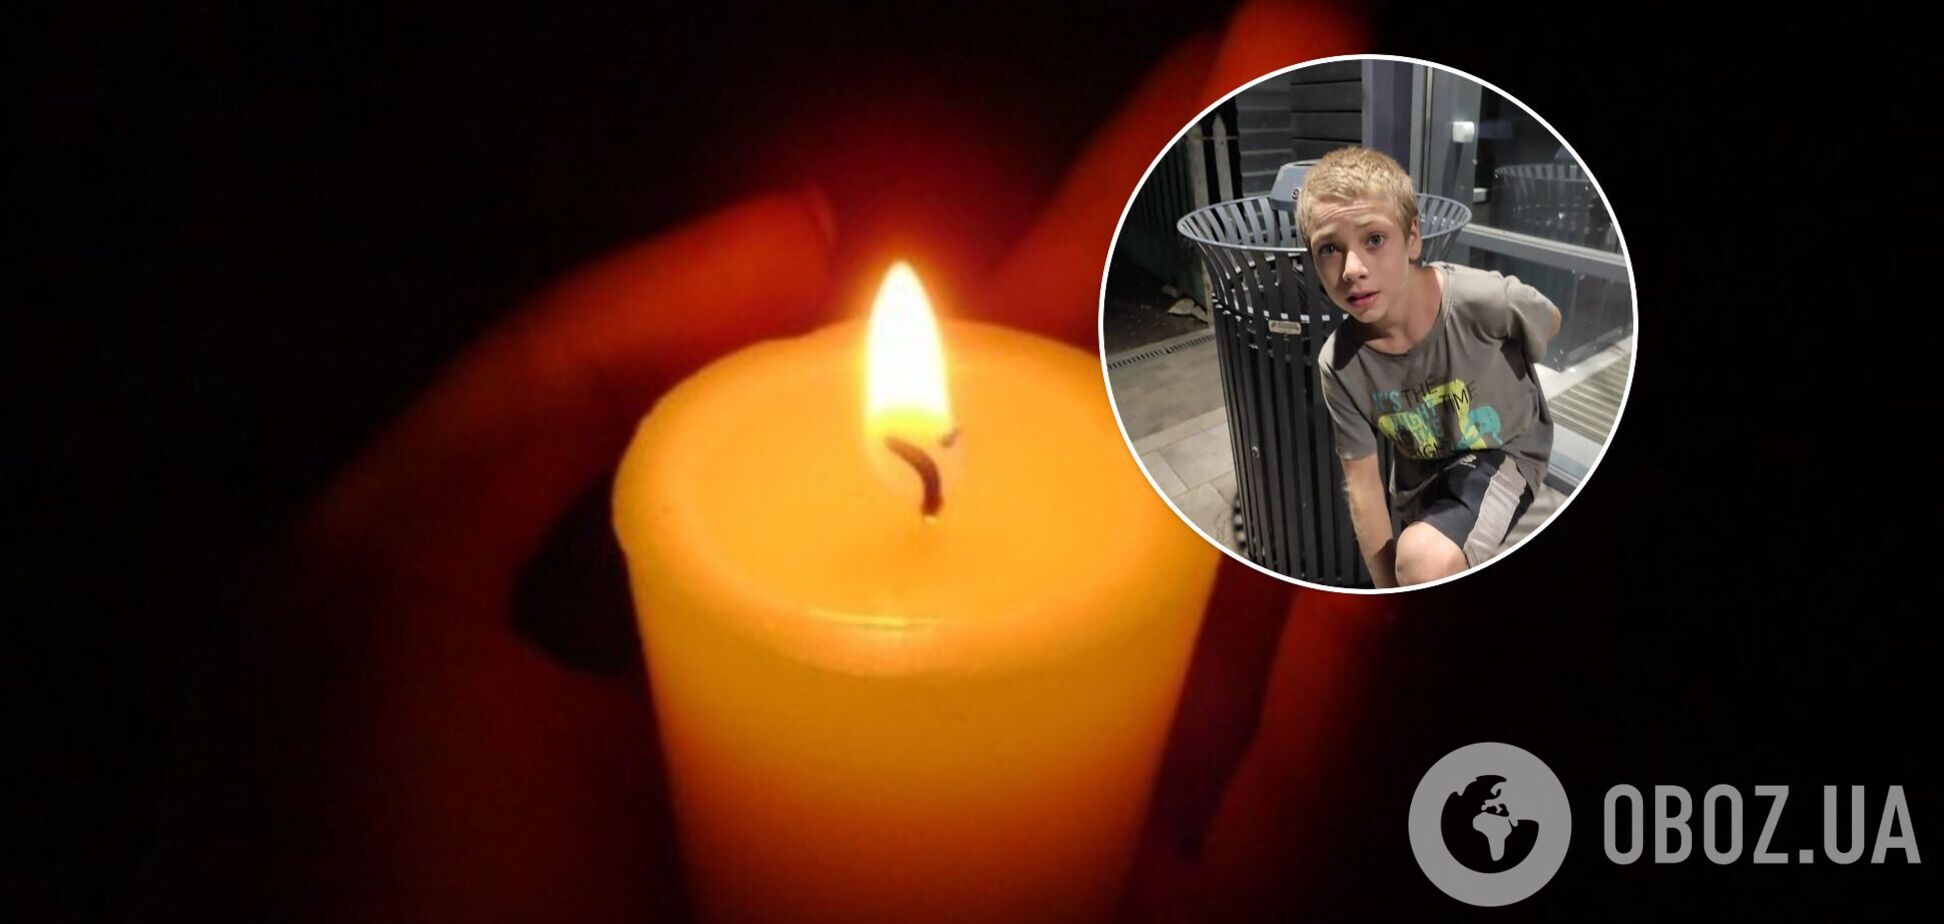 В Запорожской области обнаружили мертвым 11-летнего мальчика: его искали пять месяцев